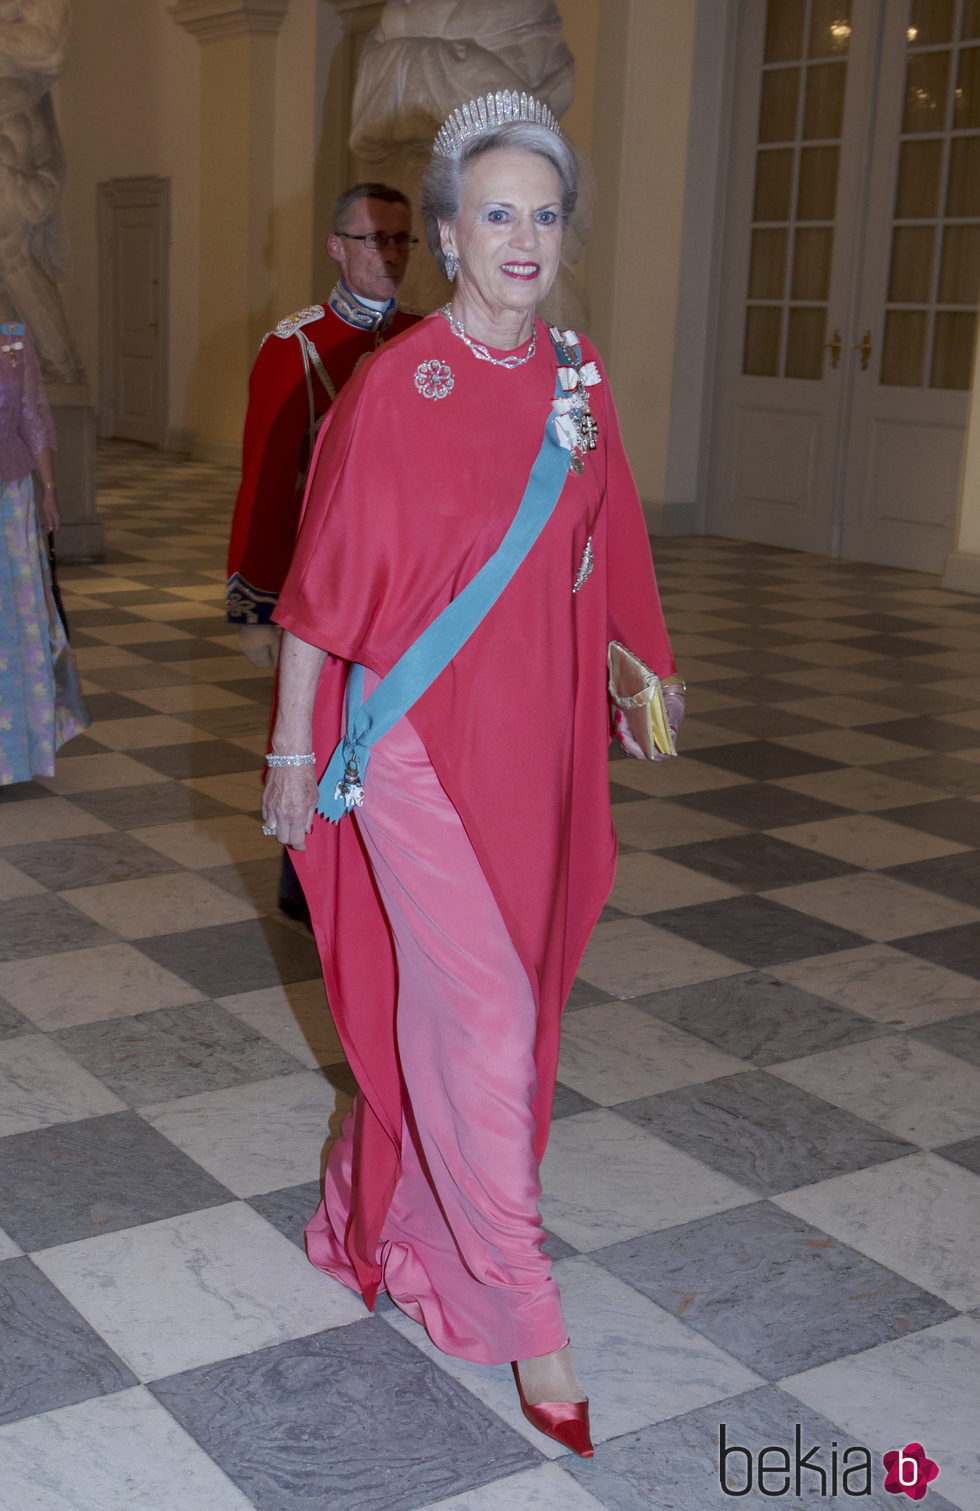 La princesa Benedicta de Dinamarca con un vestido y una capa en tonos rosados